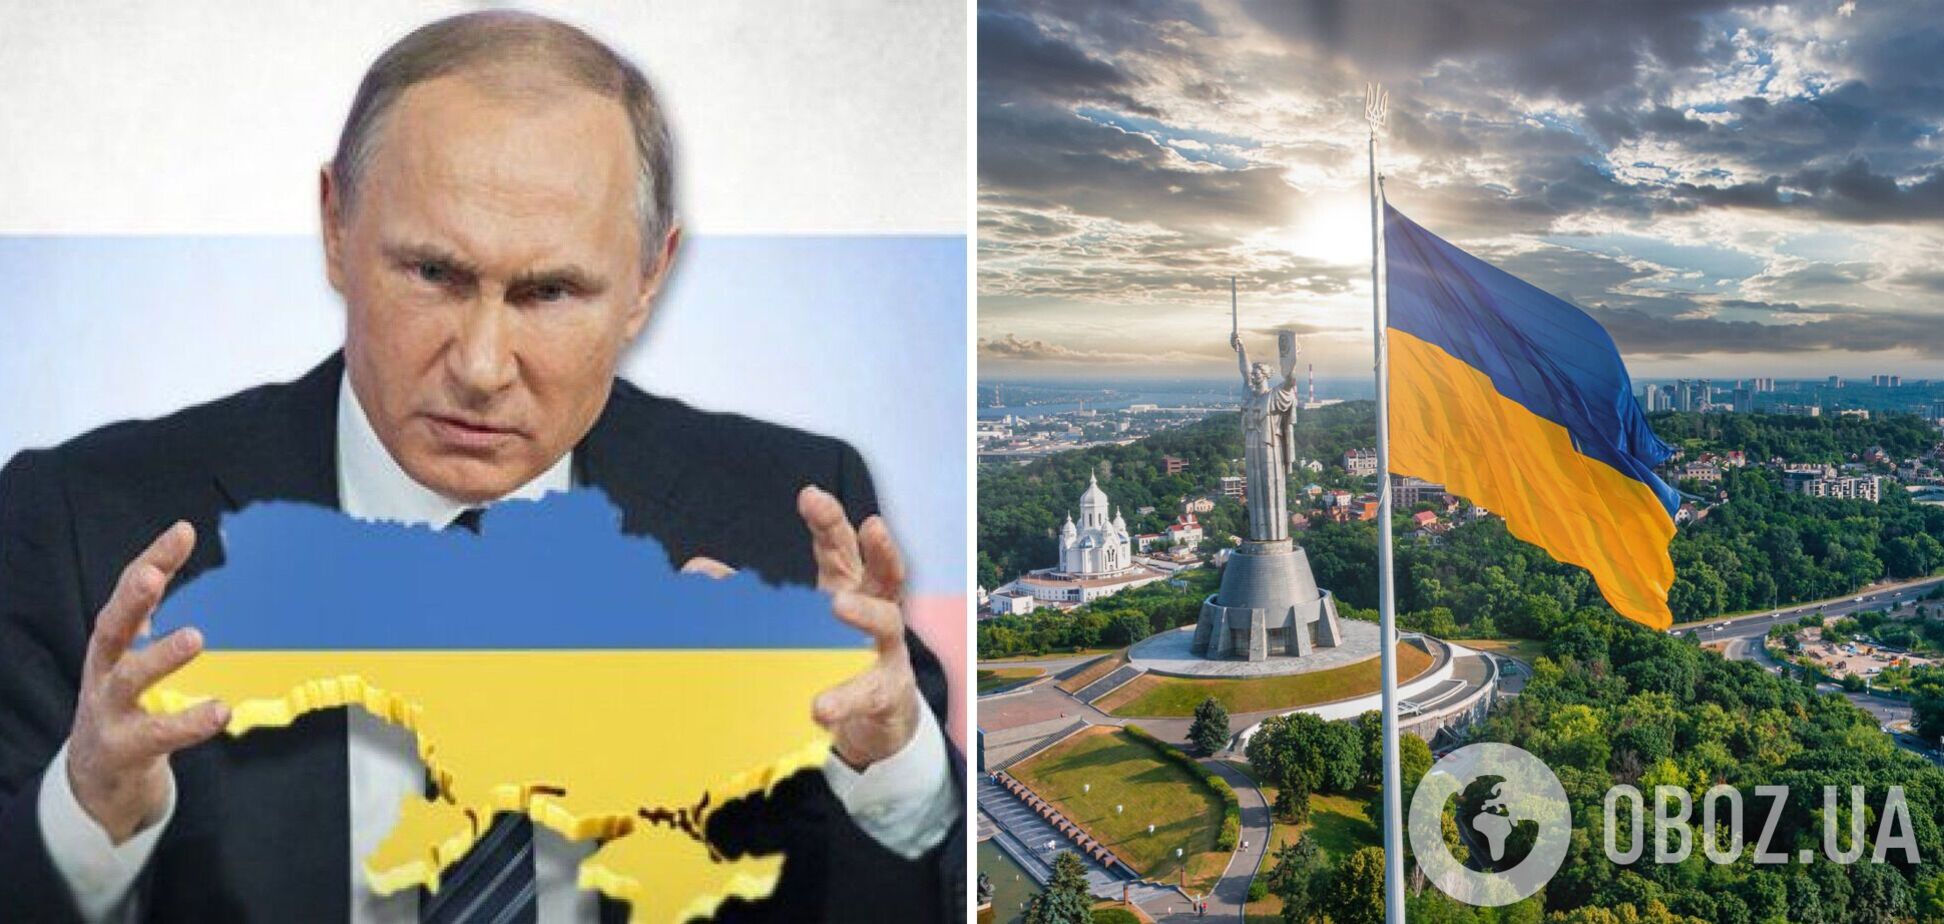 Переговоры 2022 года: Путин потерпел фиаско, но его планы по Украине не изменились